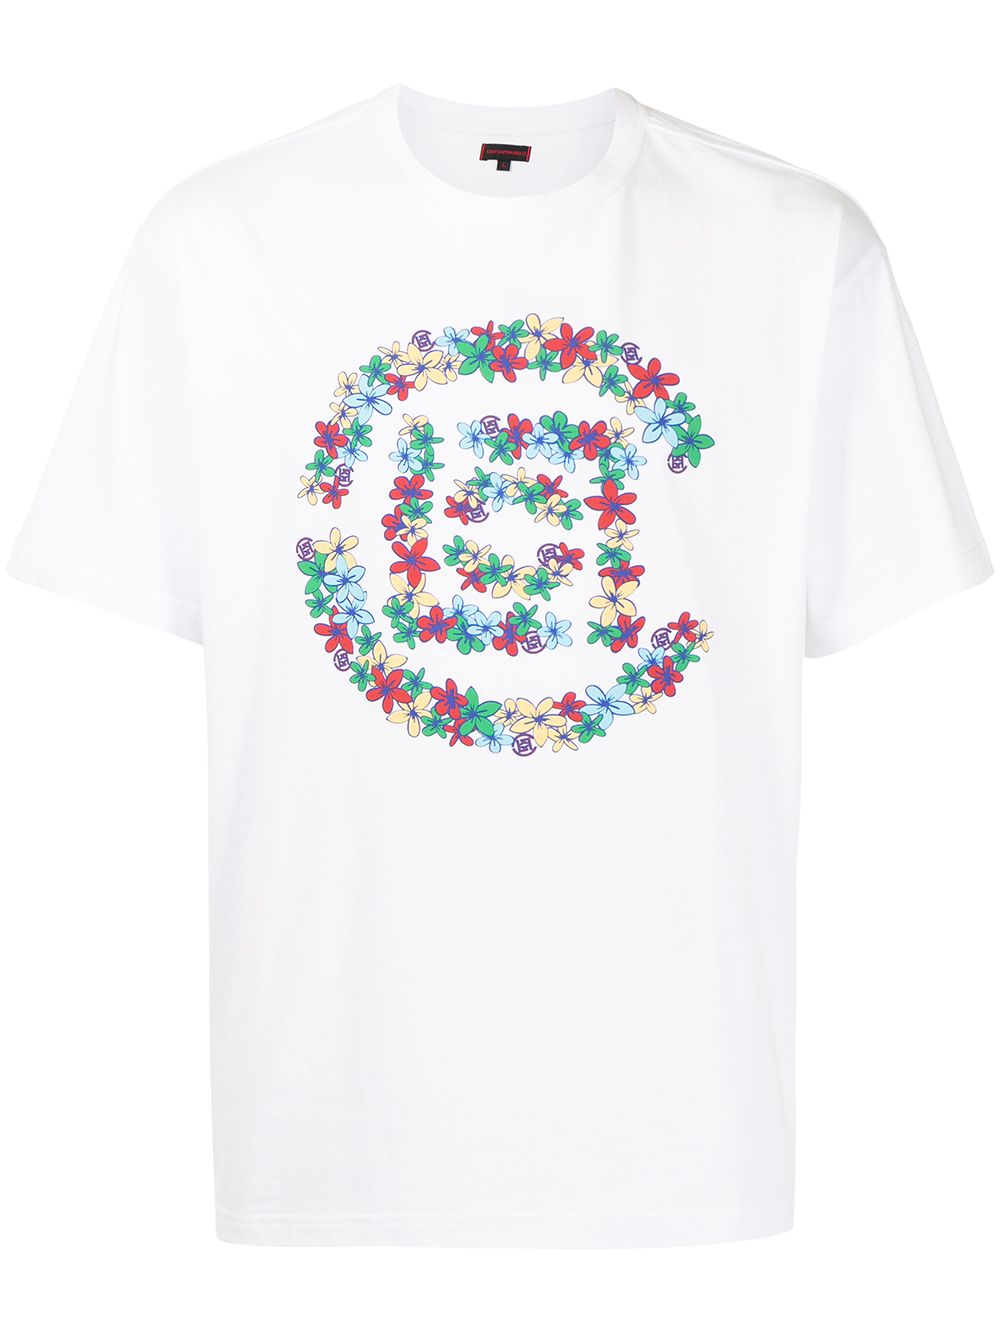 фото Clot футболка flowers с логотипом